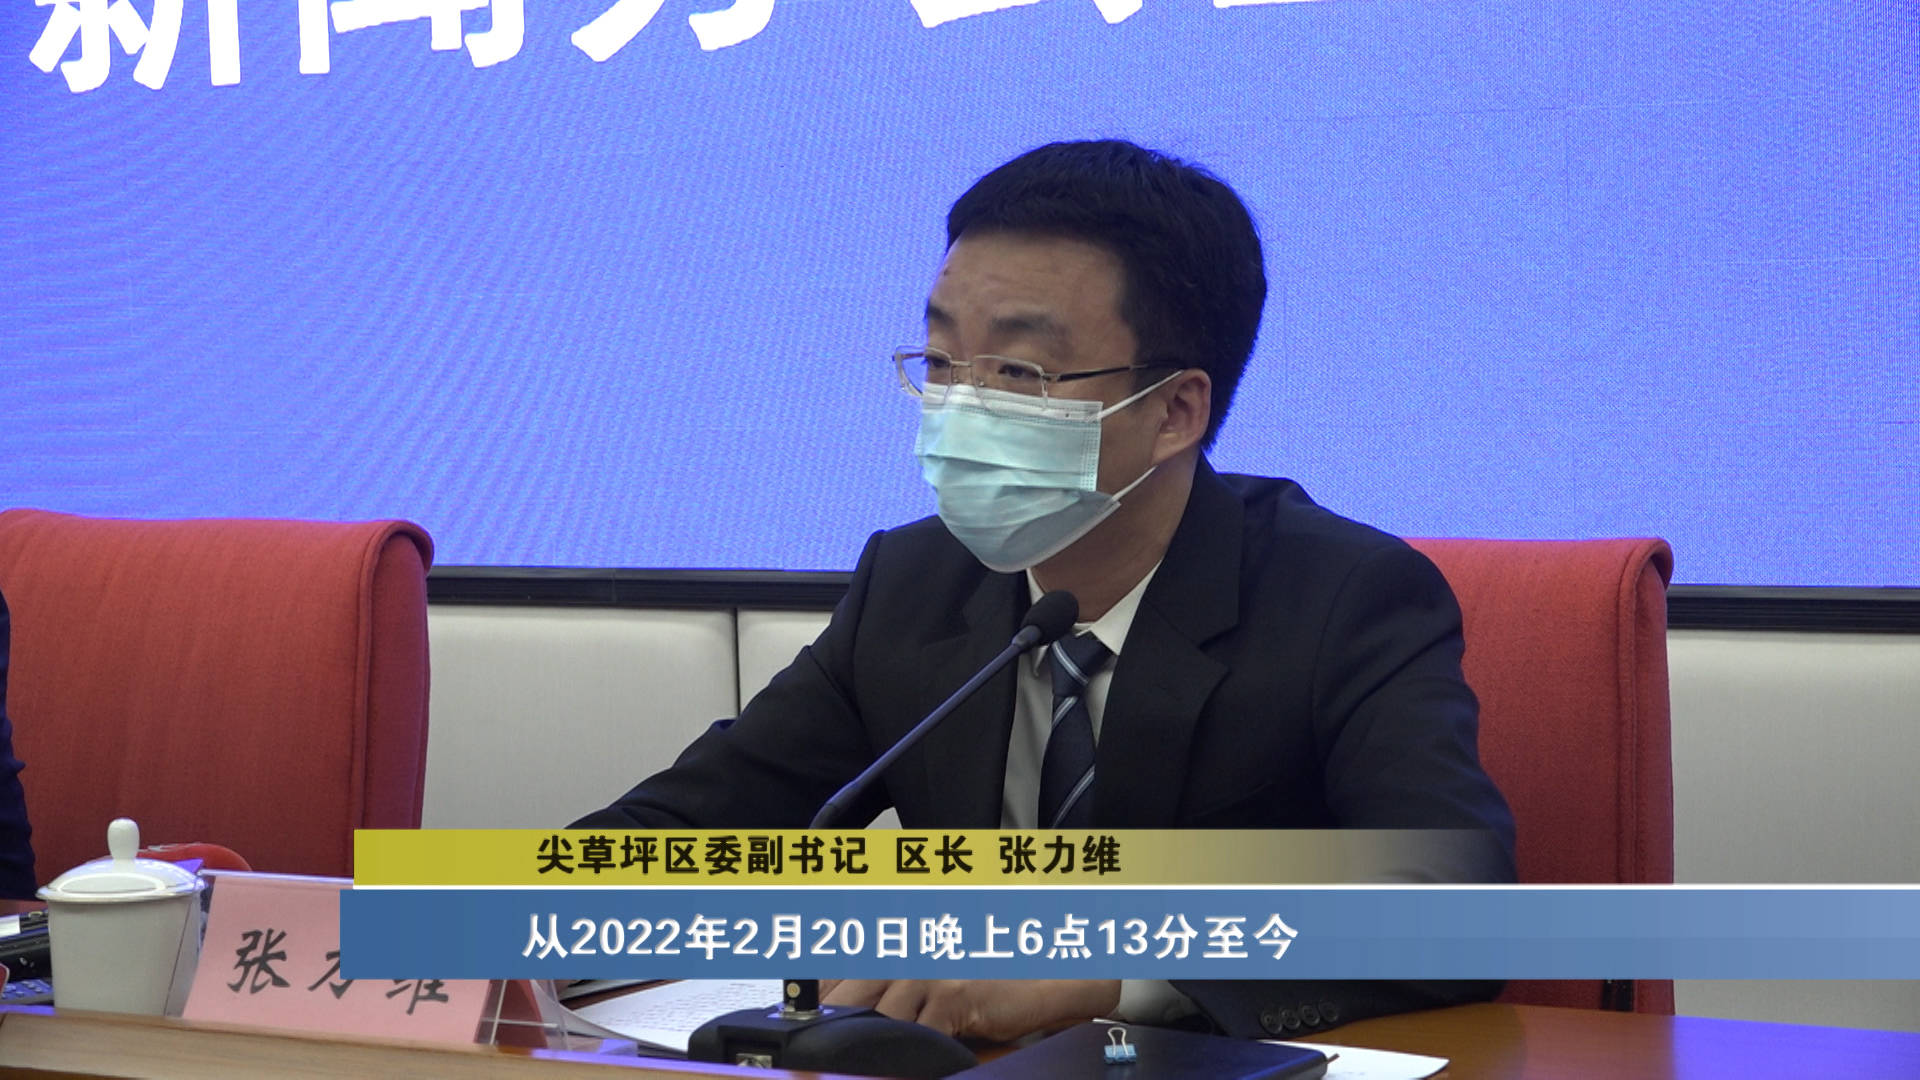 尖草坪区委副书记 区长 张力维:该患者为住校生,从2022年2月20日晚上6